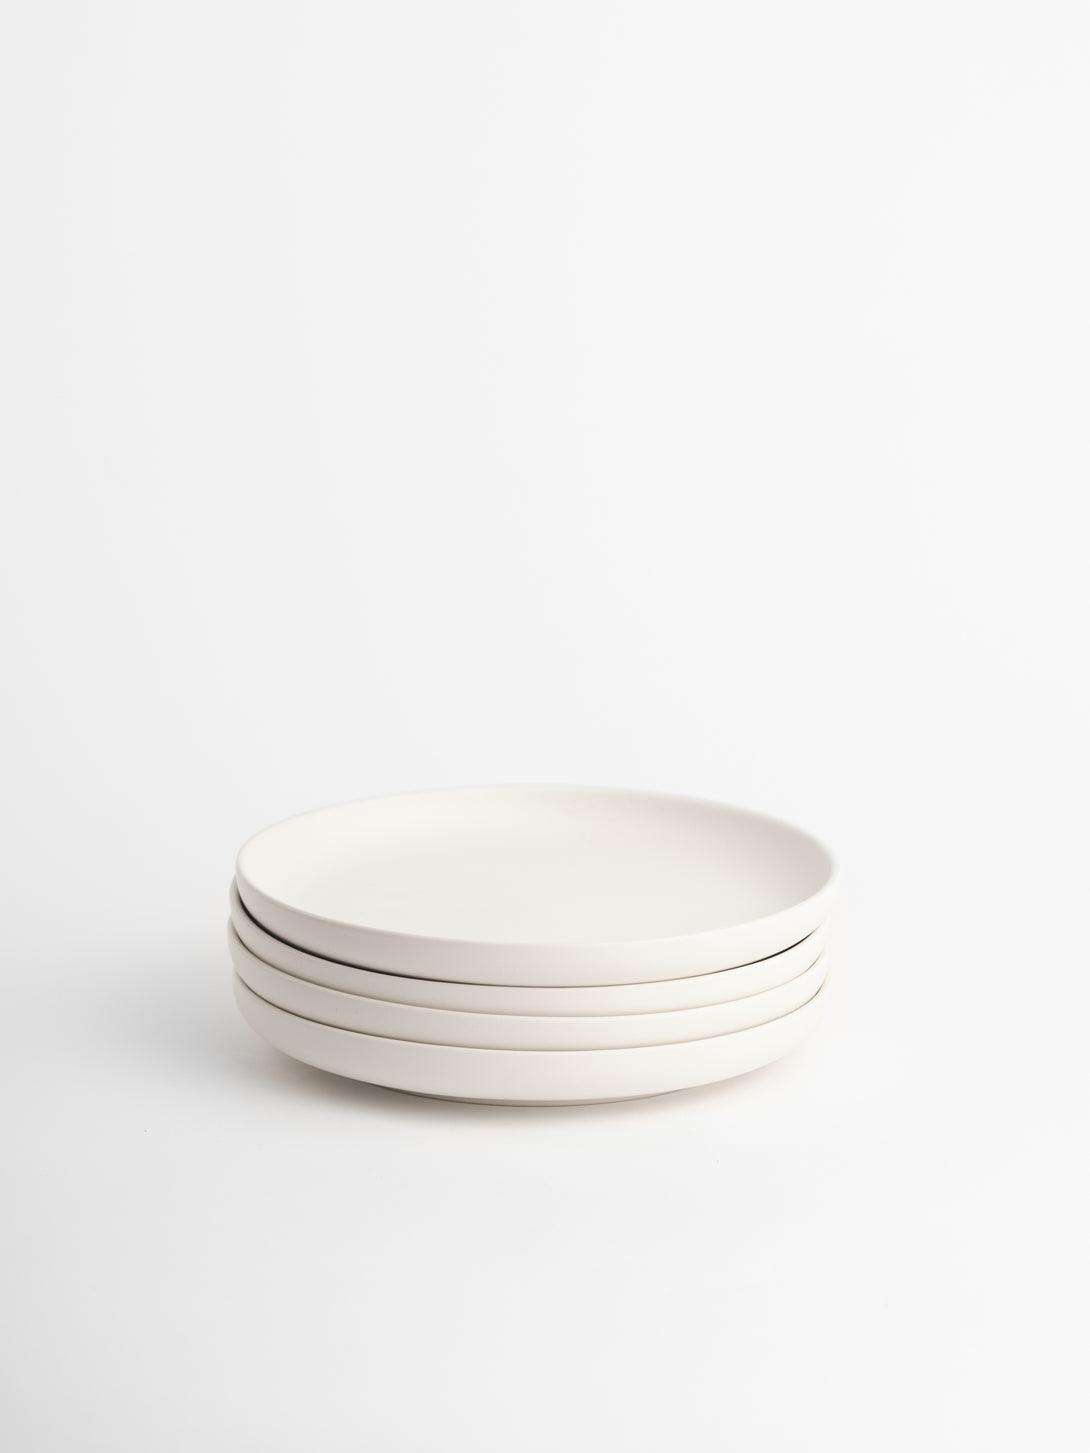 LivingTaste | Matt Ceramic White Tableware | Dinner Dish | Dinner Plates 